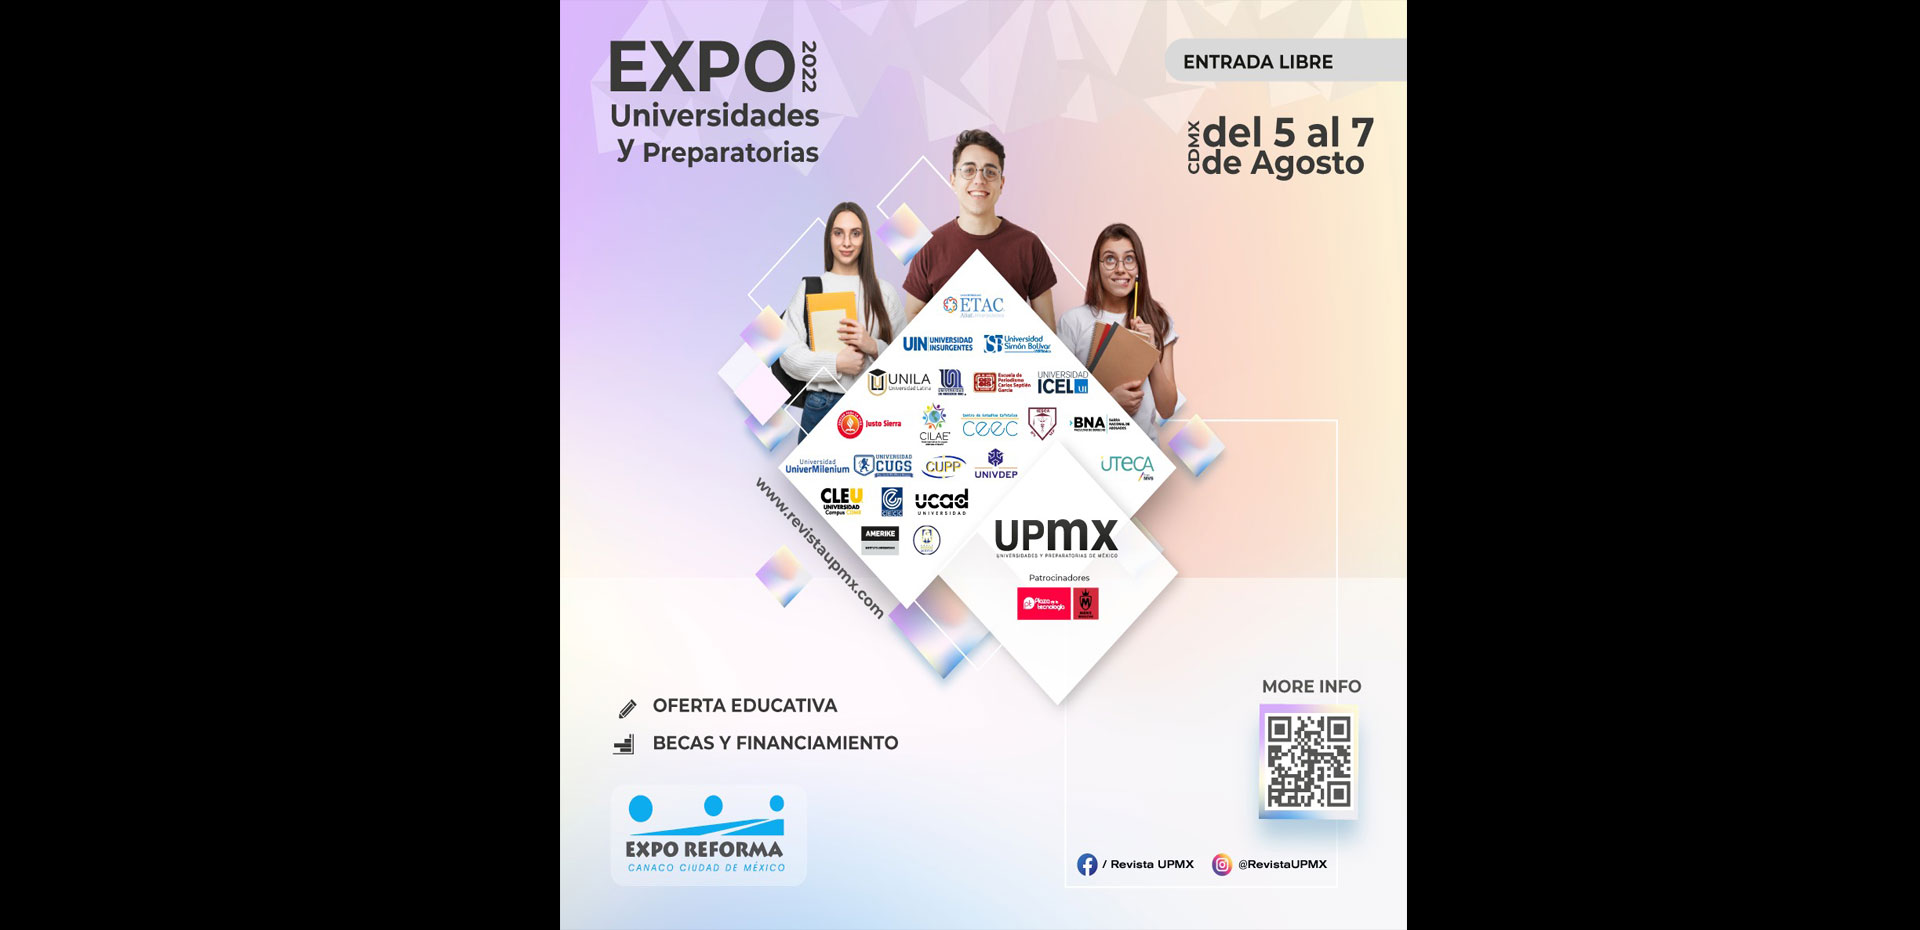 Expo Universidades y Preparatorias